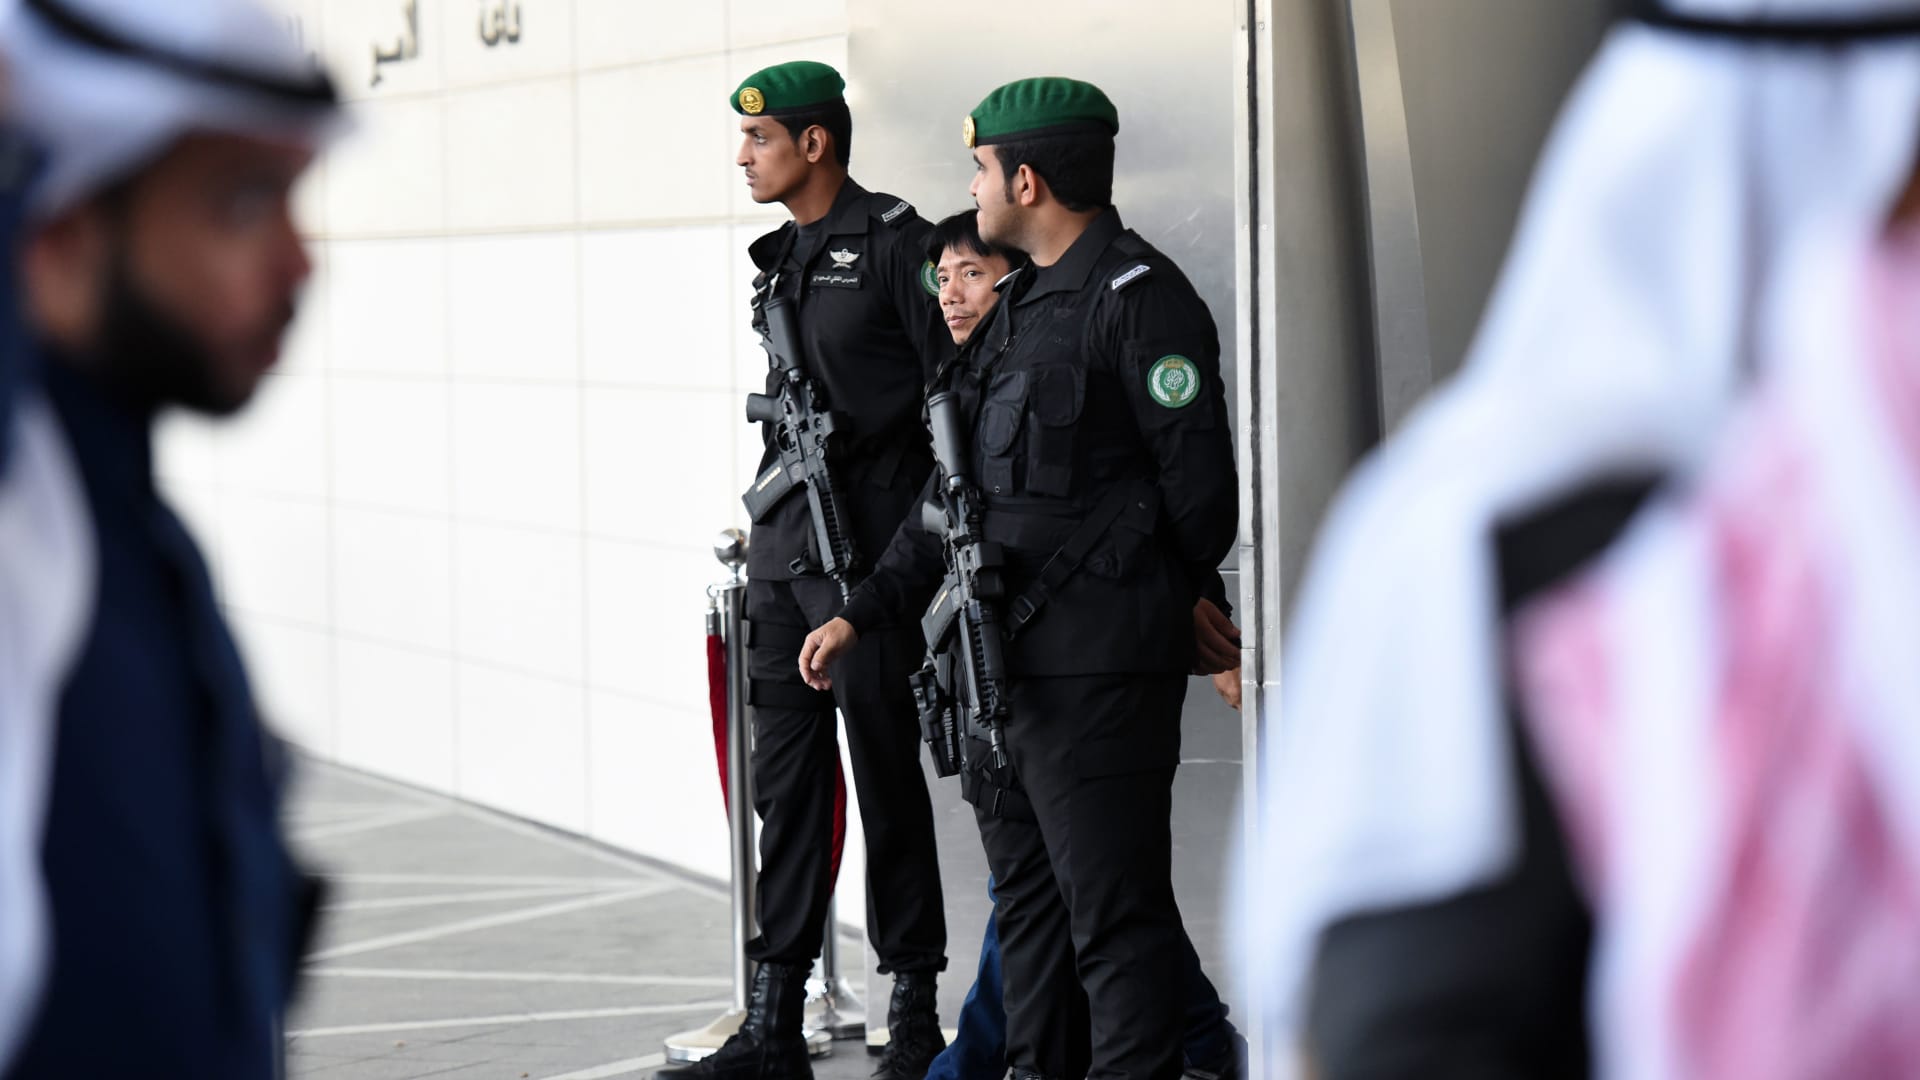 السعودية تنفق ميزانيات باهظة على الحرس الملكي وتتجاهل تردي الأوضاع الخدمية